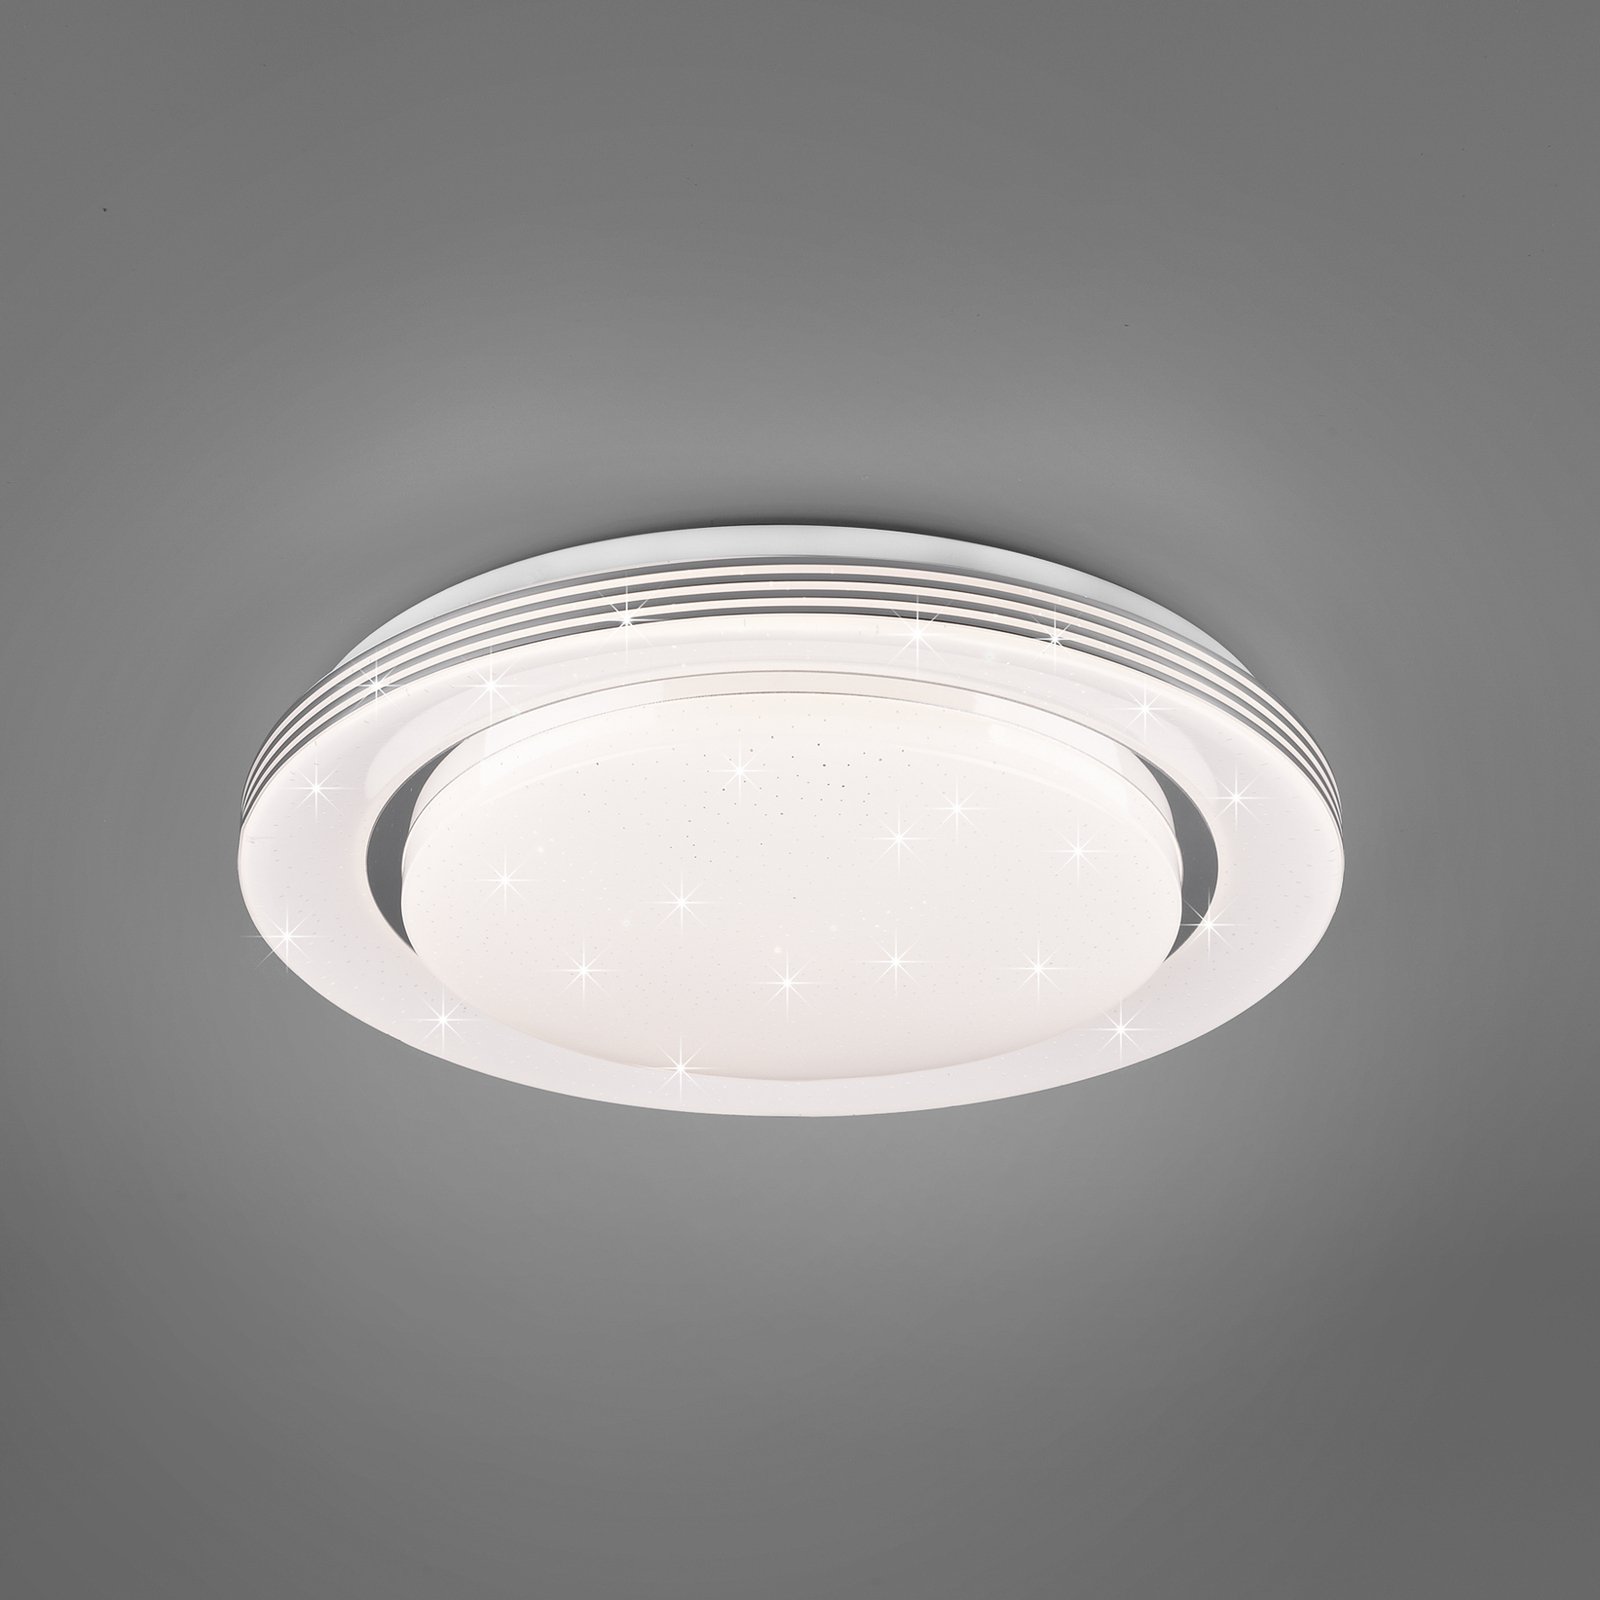 LED-taklampa Atria, Ø 38 cm, vit, plast, CCT